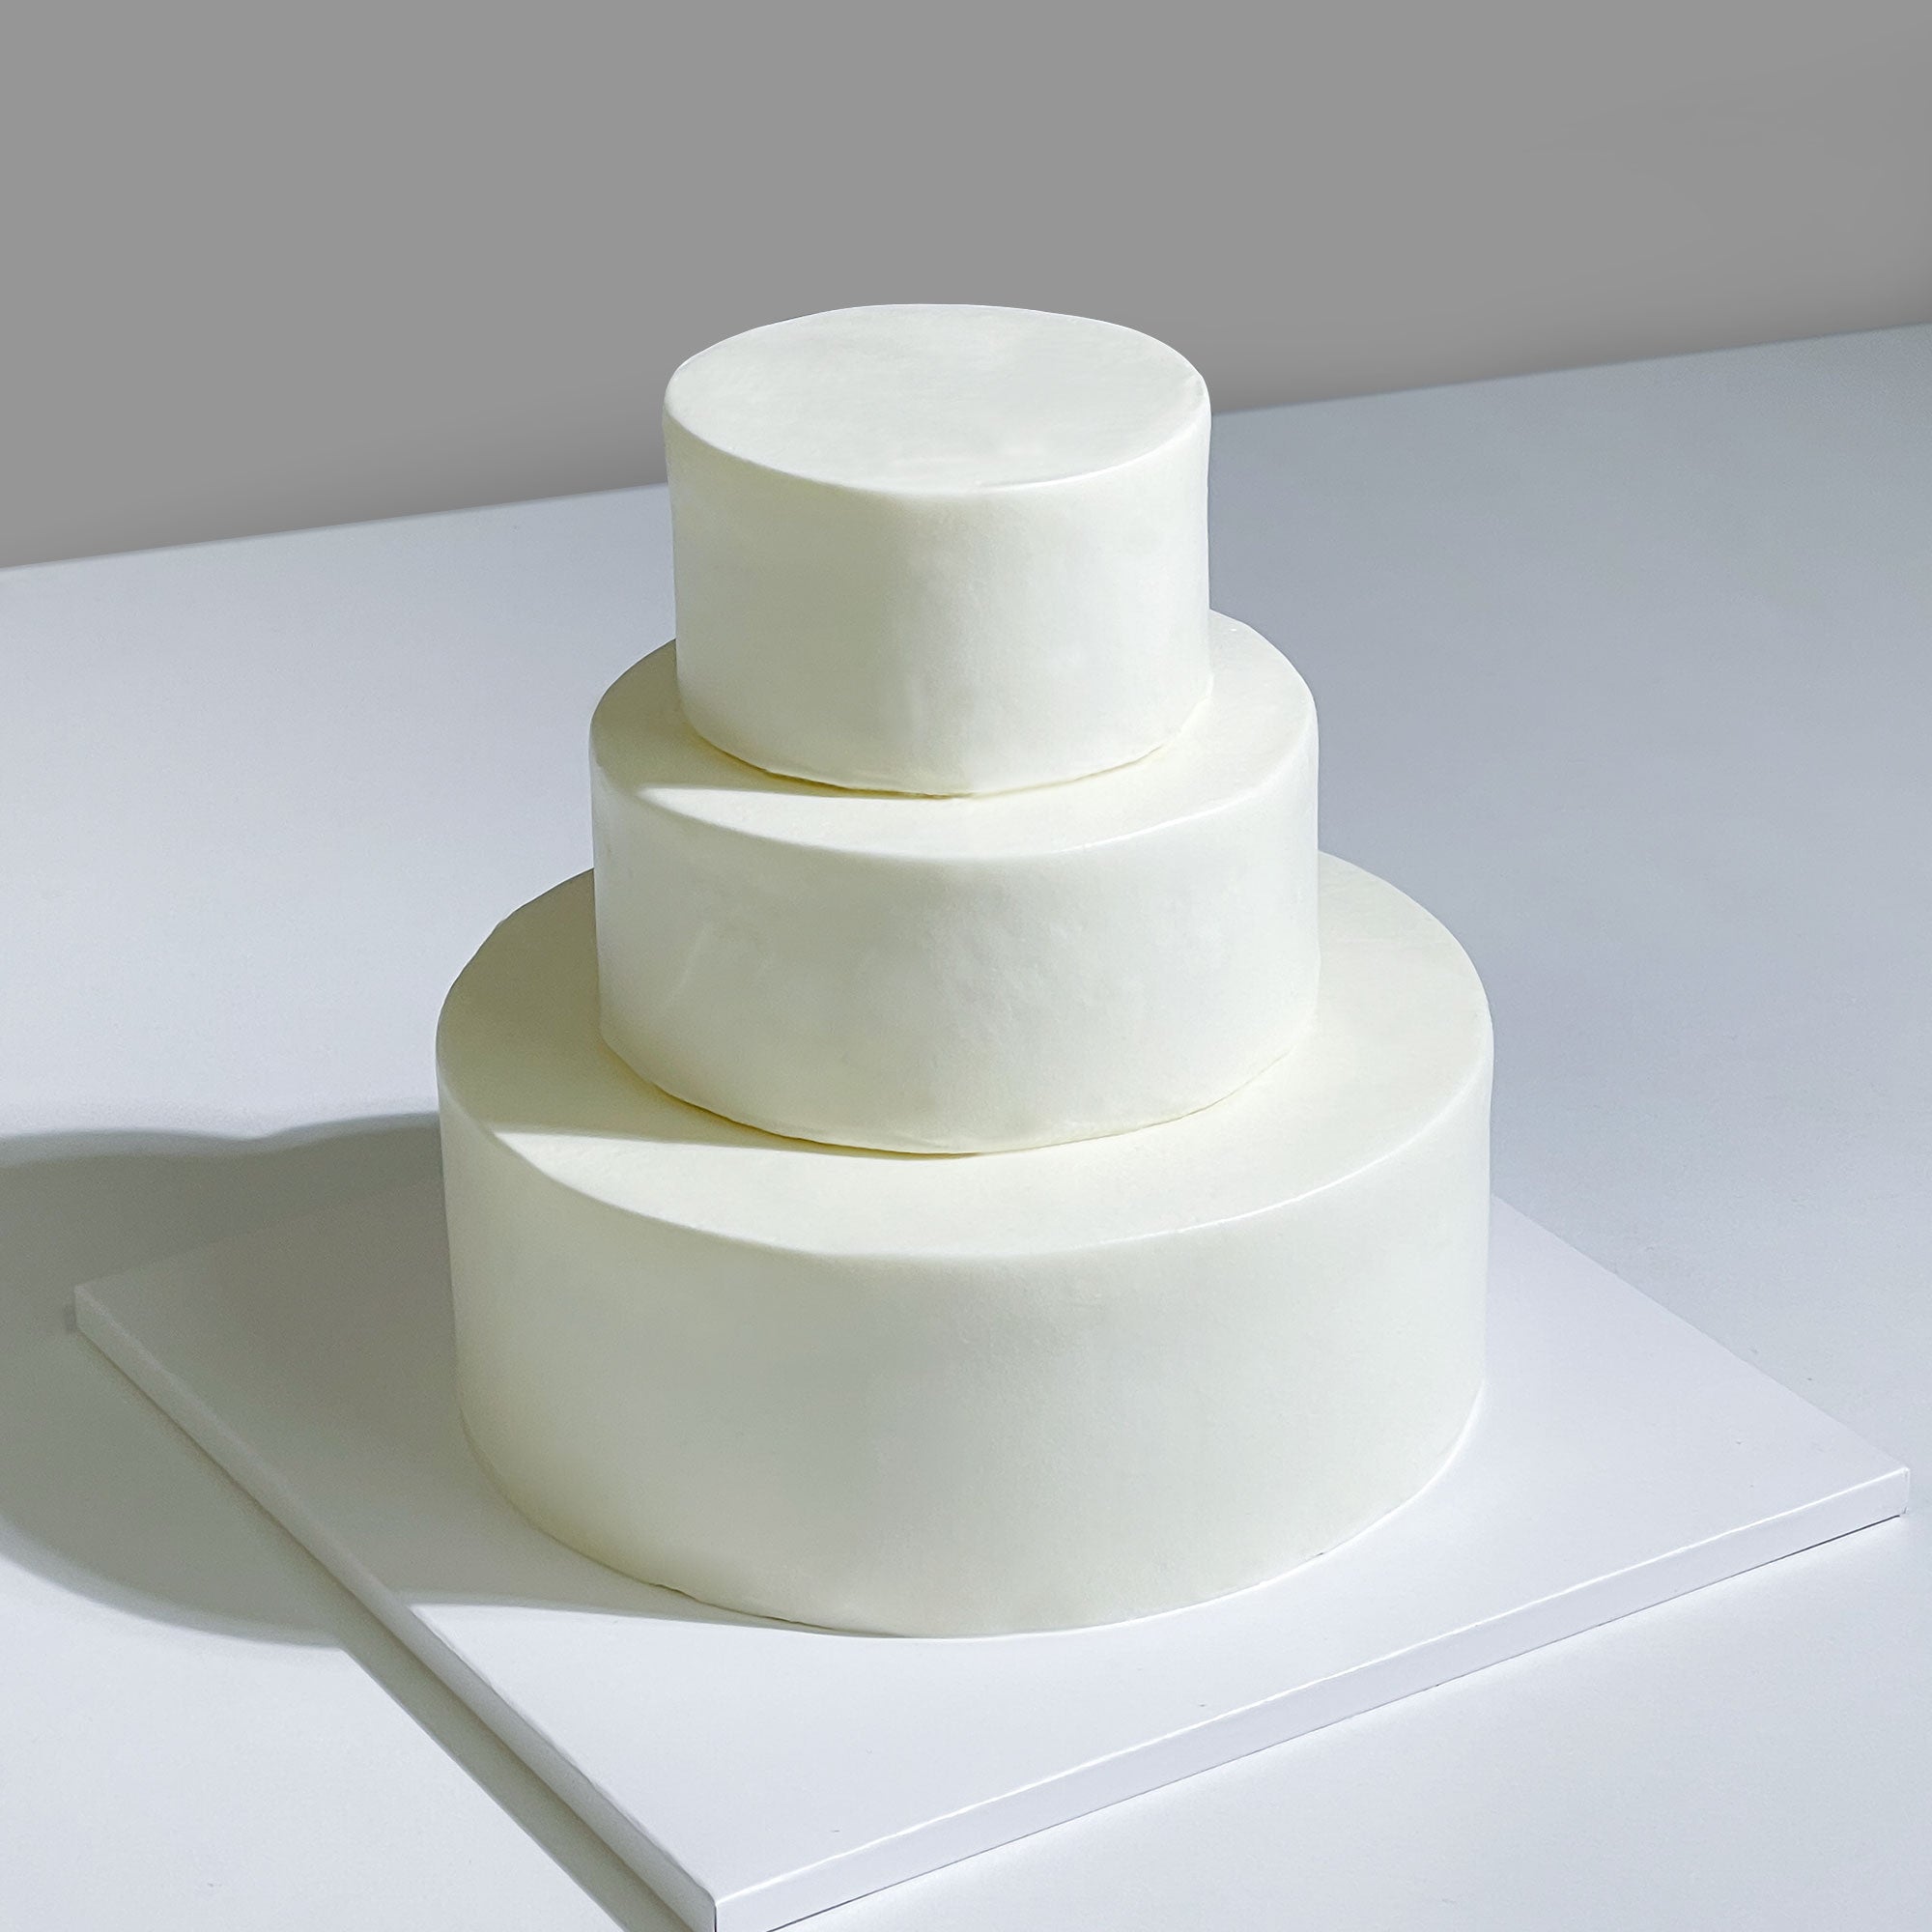 Buy/Send 3 Tier Designer Delight Cake | Same Day Delivery - Giftzbag